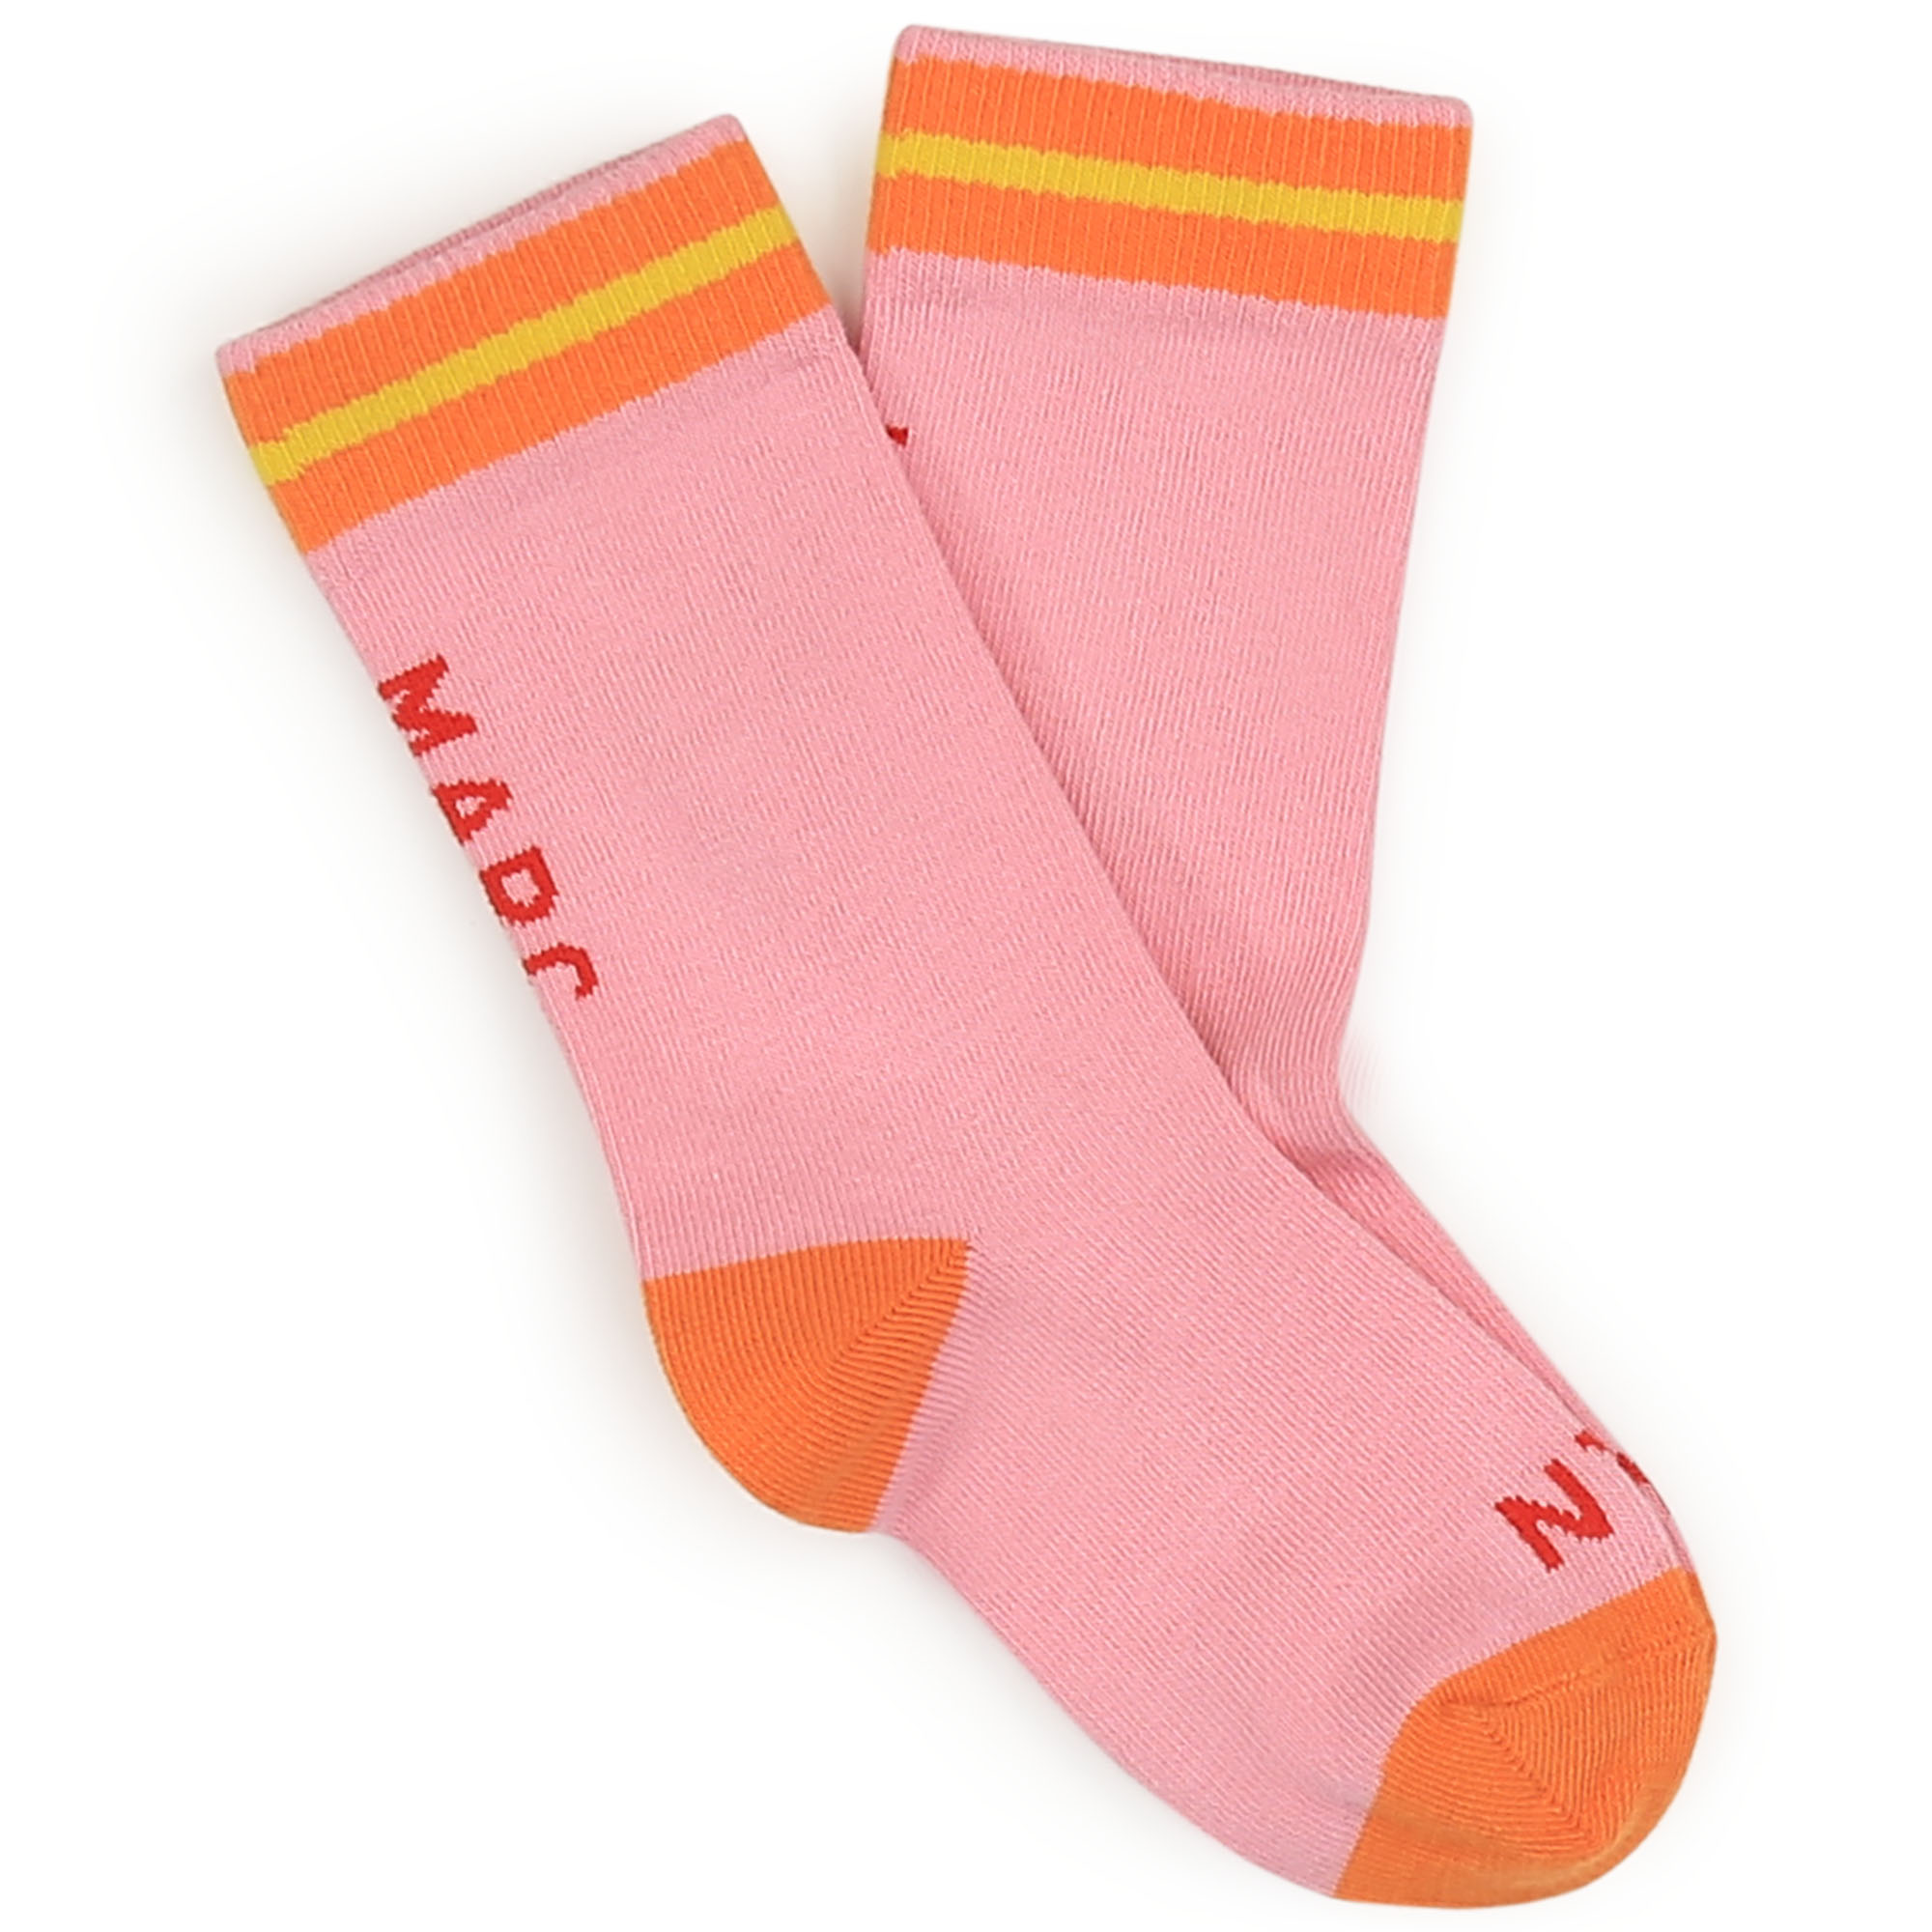 Jacquard Socks MARC JACOBS for GIRL